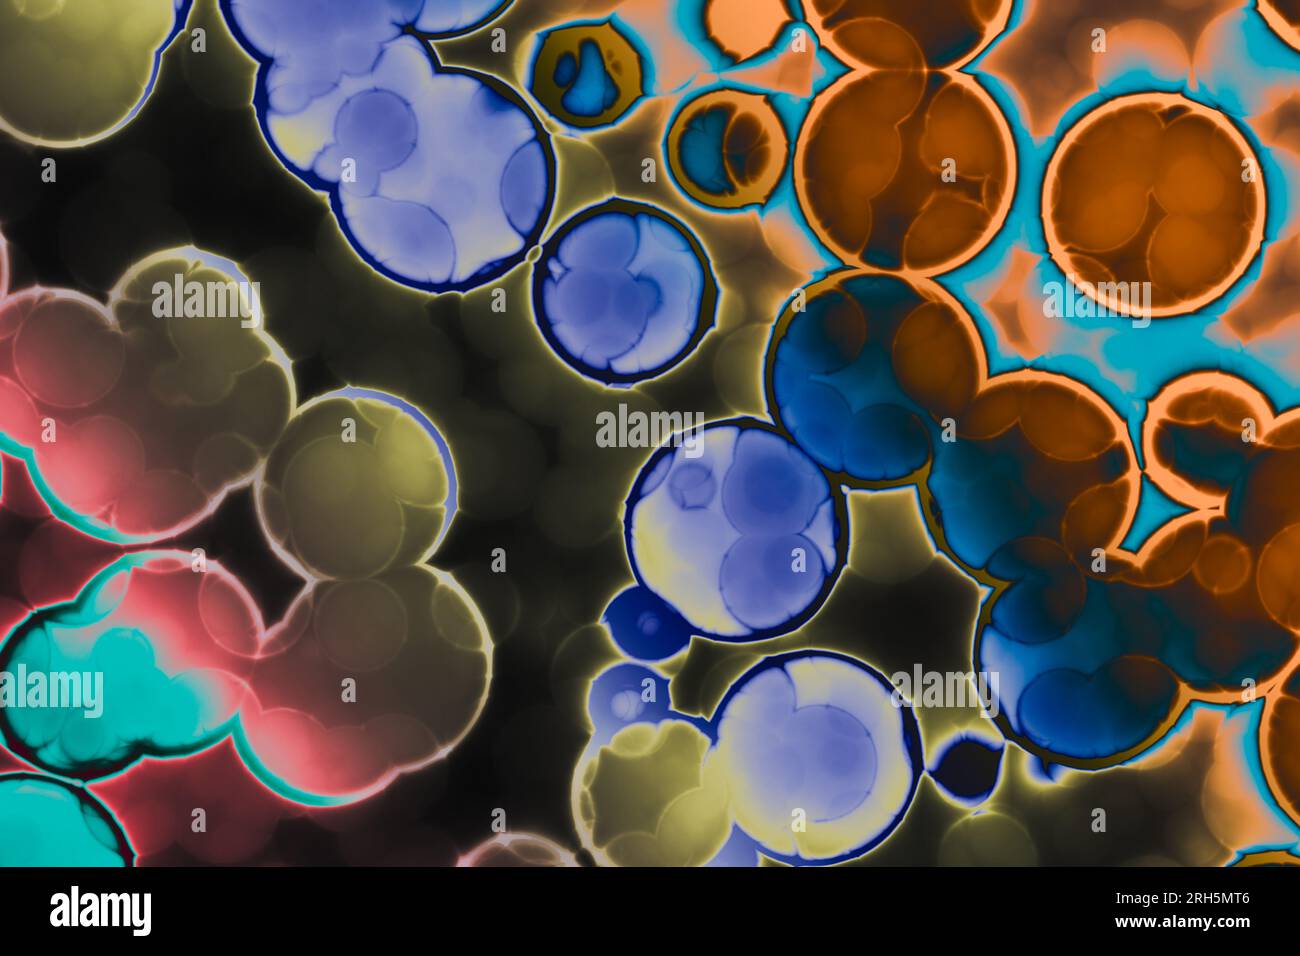 Forme de cellule bactérienne : cocci, bacilles, bactéries spirilla Banque D'Images